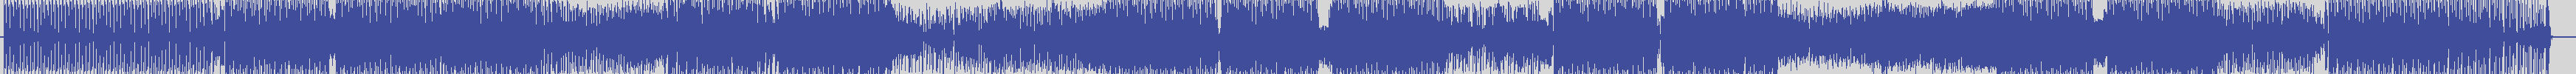 smilax_productions [SPMOL078] Takeshy Kurosawa, Gube - Wassup [Takeshy Kurosawa Original Mix] audio wave form